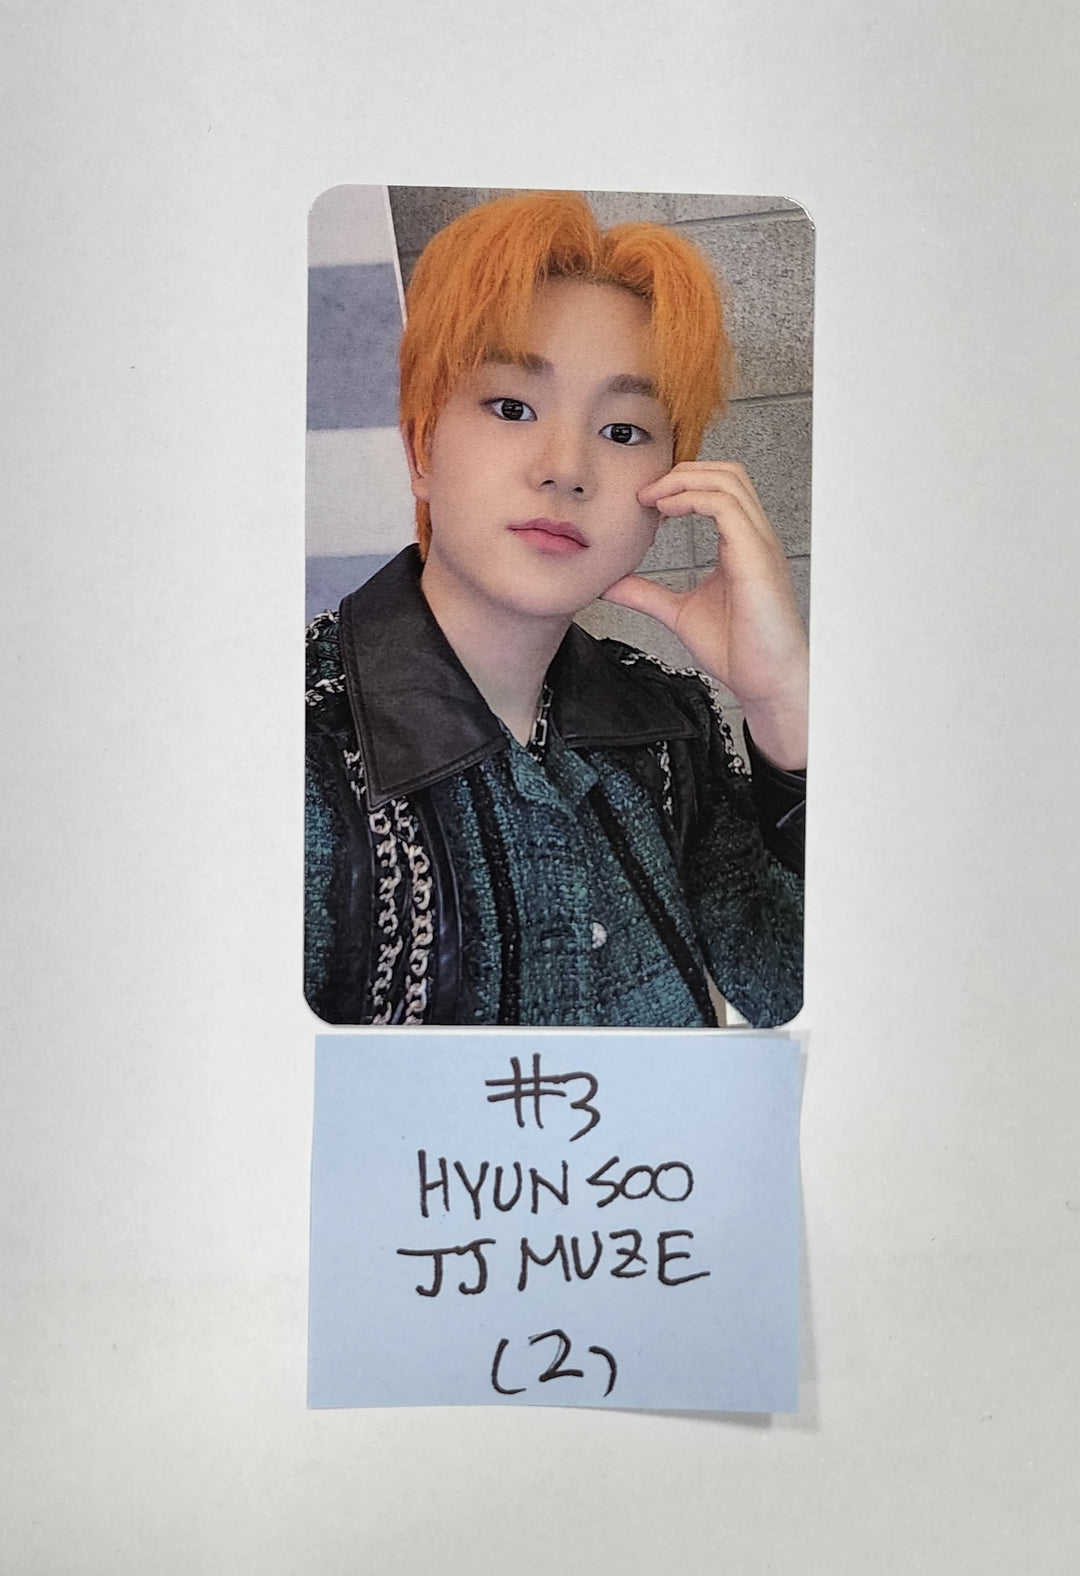 TNX "WAY UP" 1st Mini - JJ Muze ファンサイン イベント フォトカード